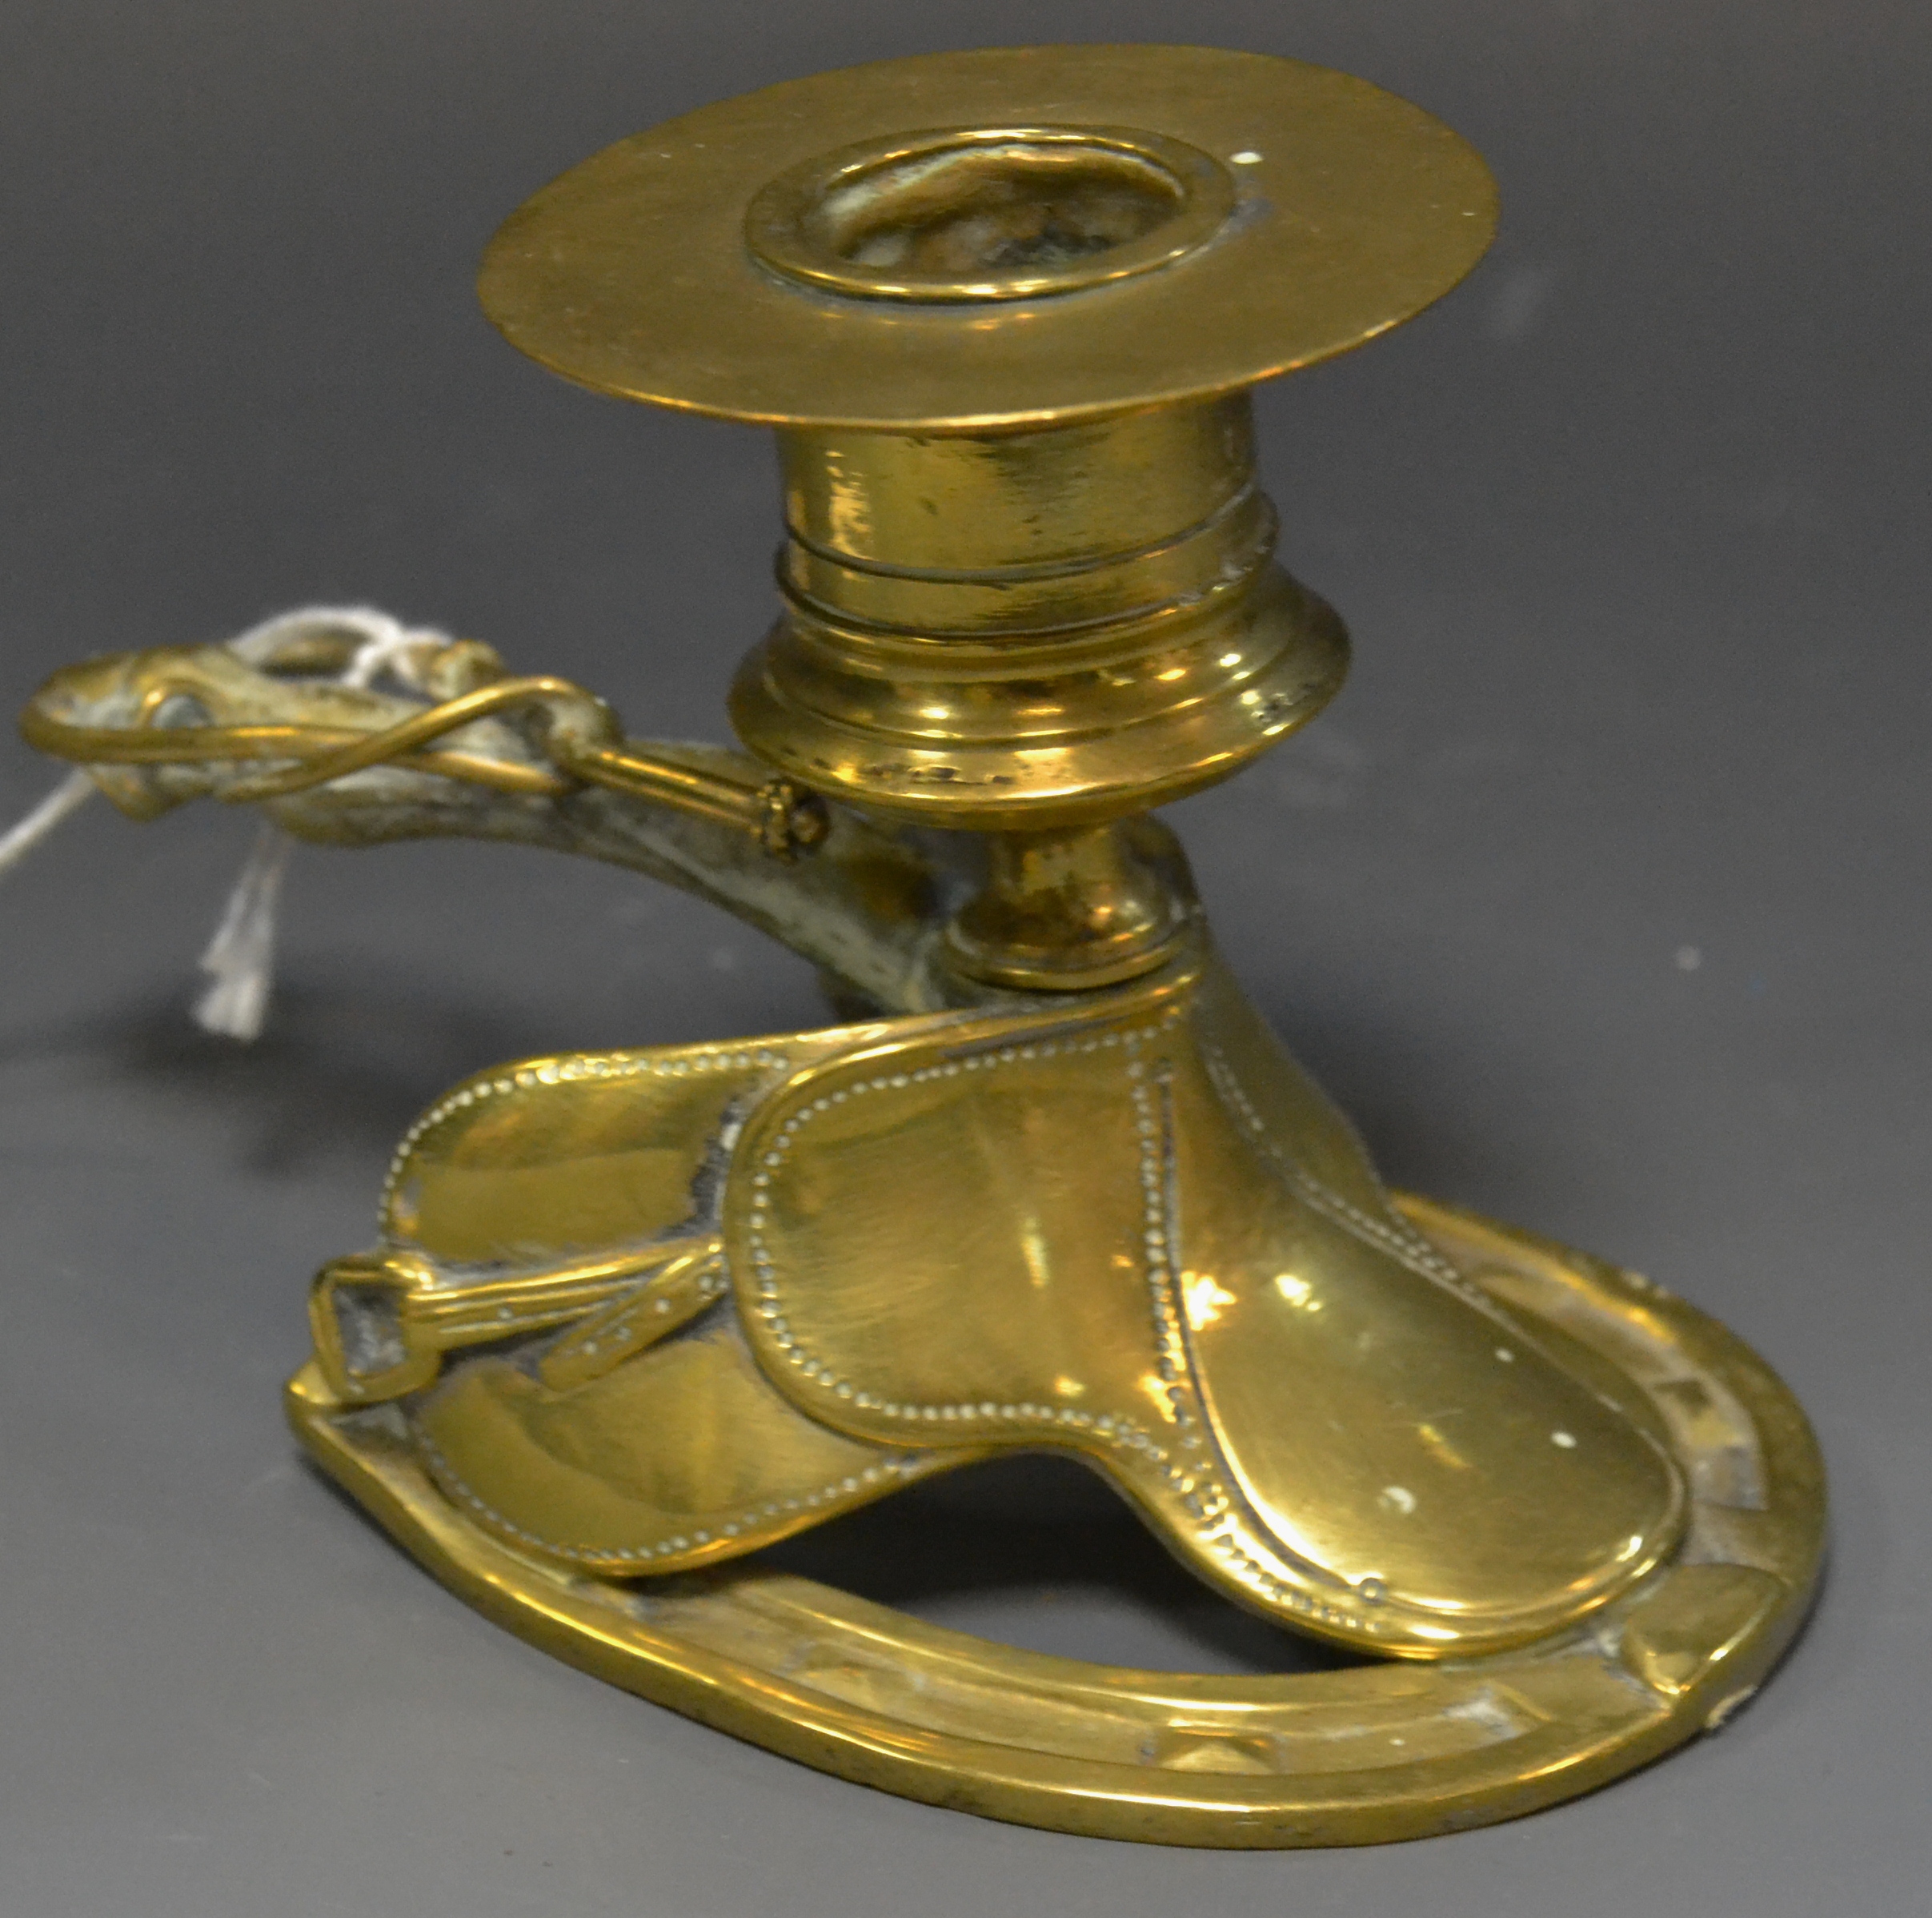 A 19th century brass novelty novelty chamber stick, cast as a saddle,